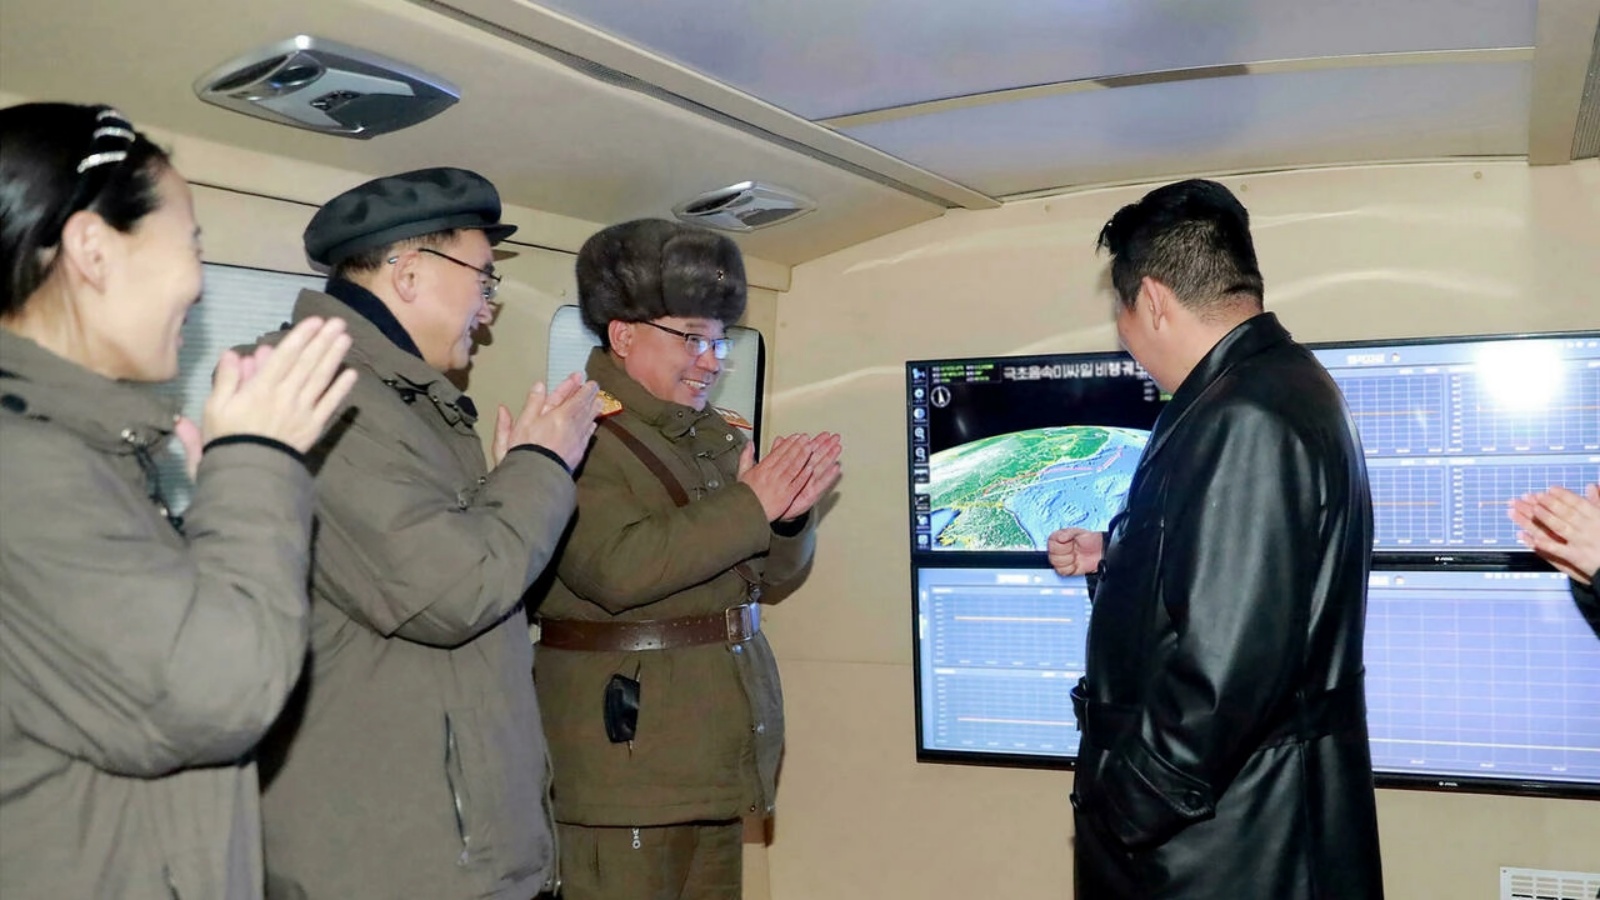 الزعيم الكوري الشمالي كيم جونغ-أون (يمين) يشرف على تجربة إطلاق صاروخ فرط صوتي، في صورة وزّعتها وكالة الأنباء الرسمية في 12 يناير 2022.